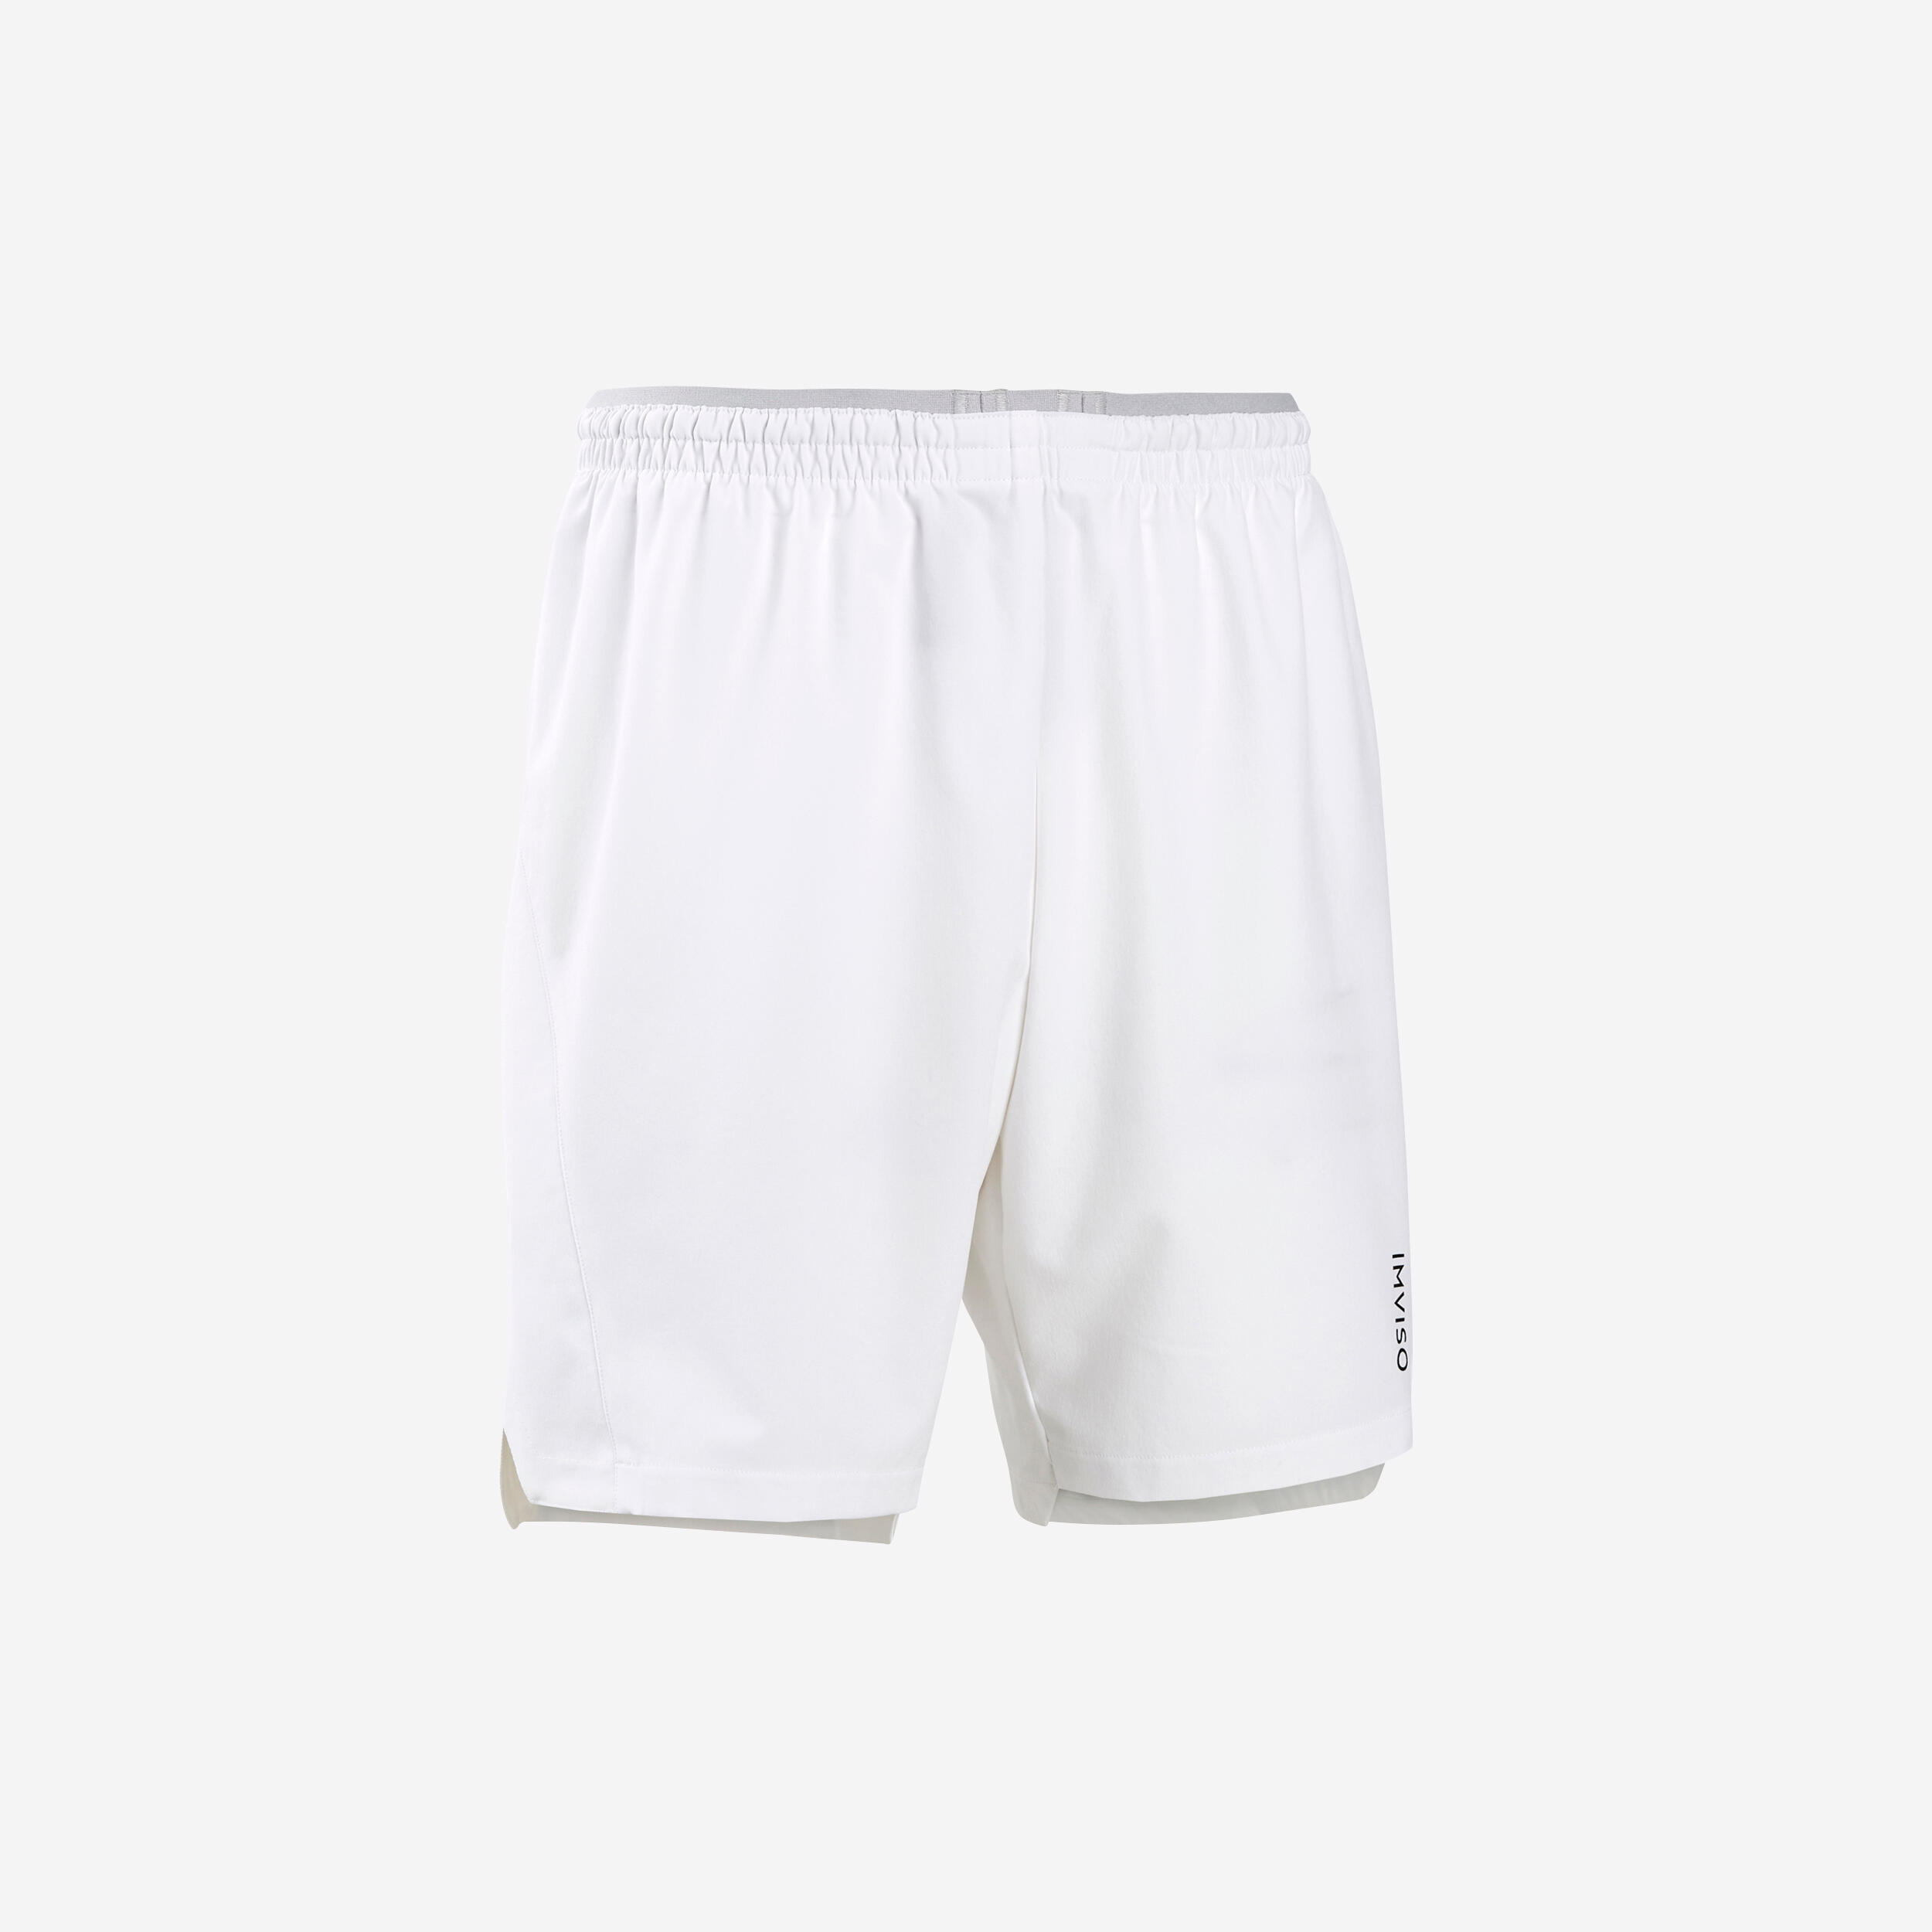 KIPSTA Men's Futsal Shorts - White